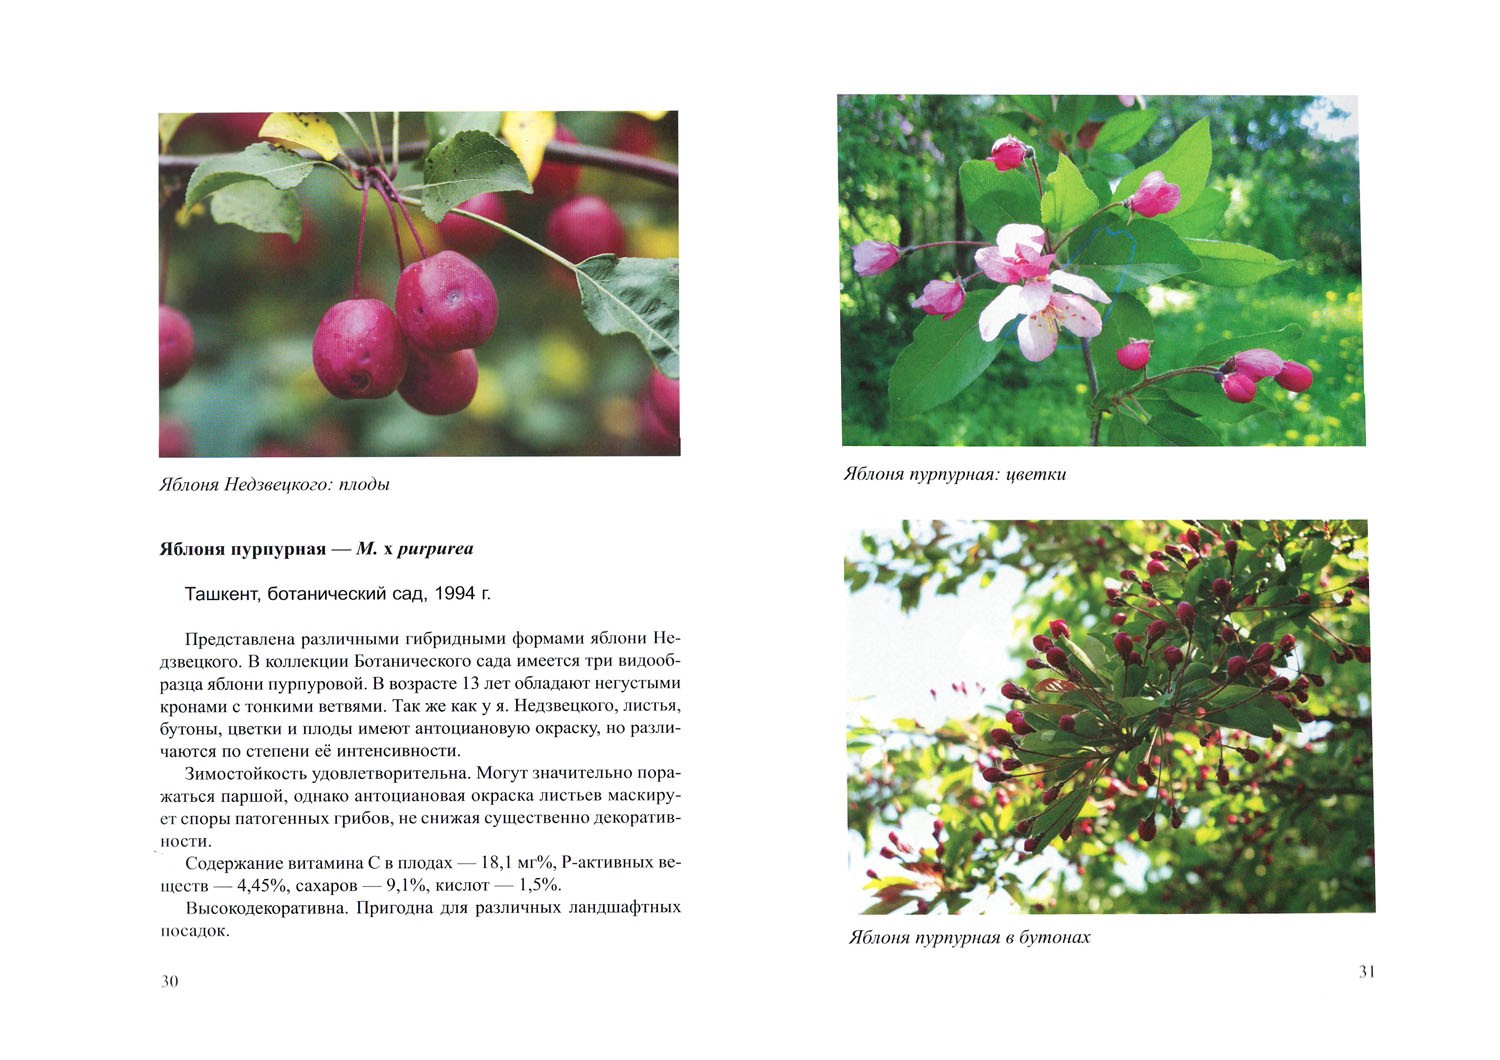 Яблоня недзвецкого: особенности и характеристики сорта